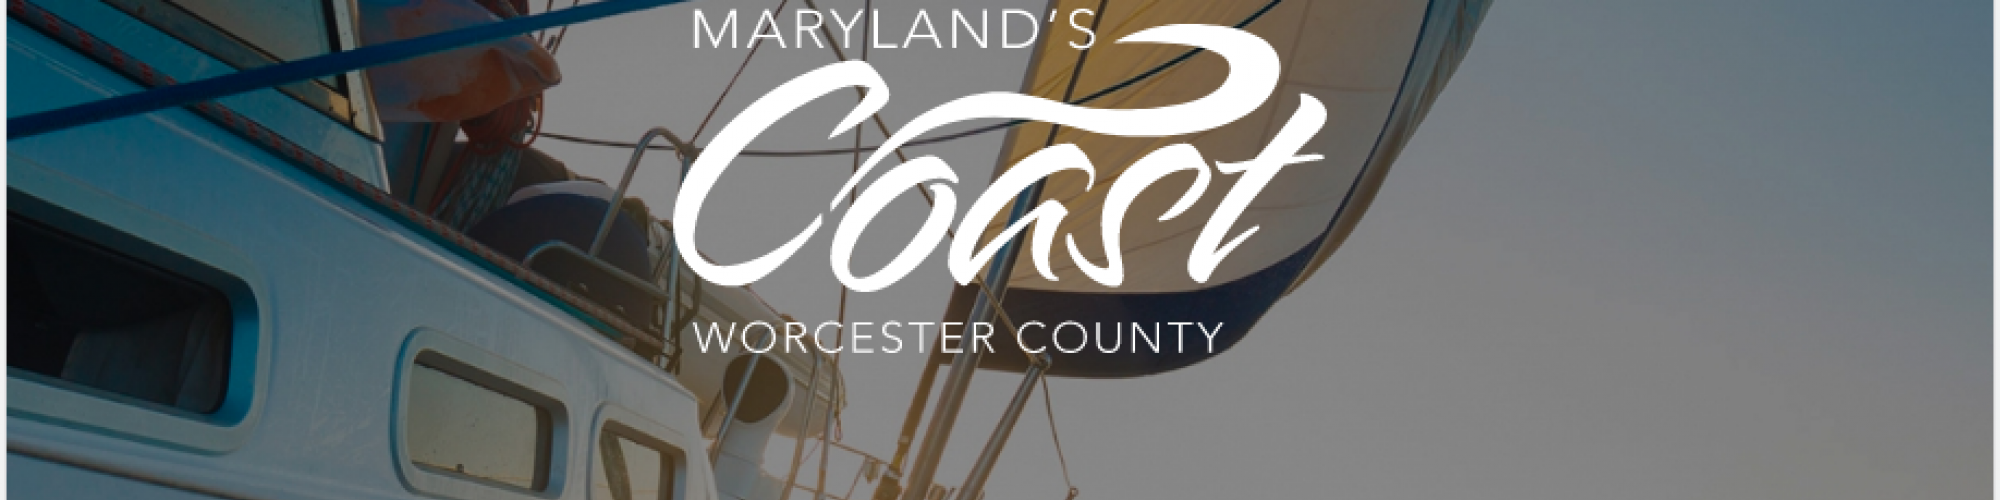 Go Coastal: Maryland’s Coast App